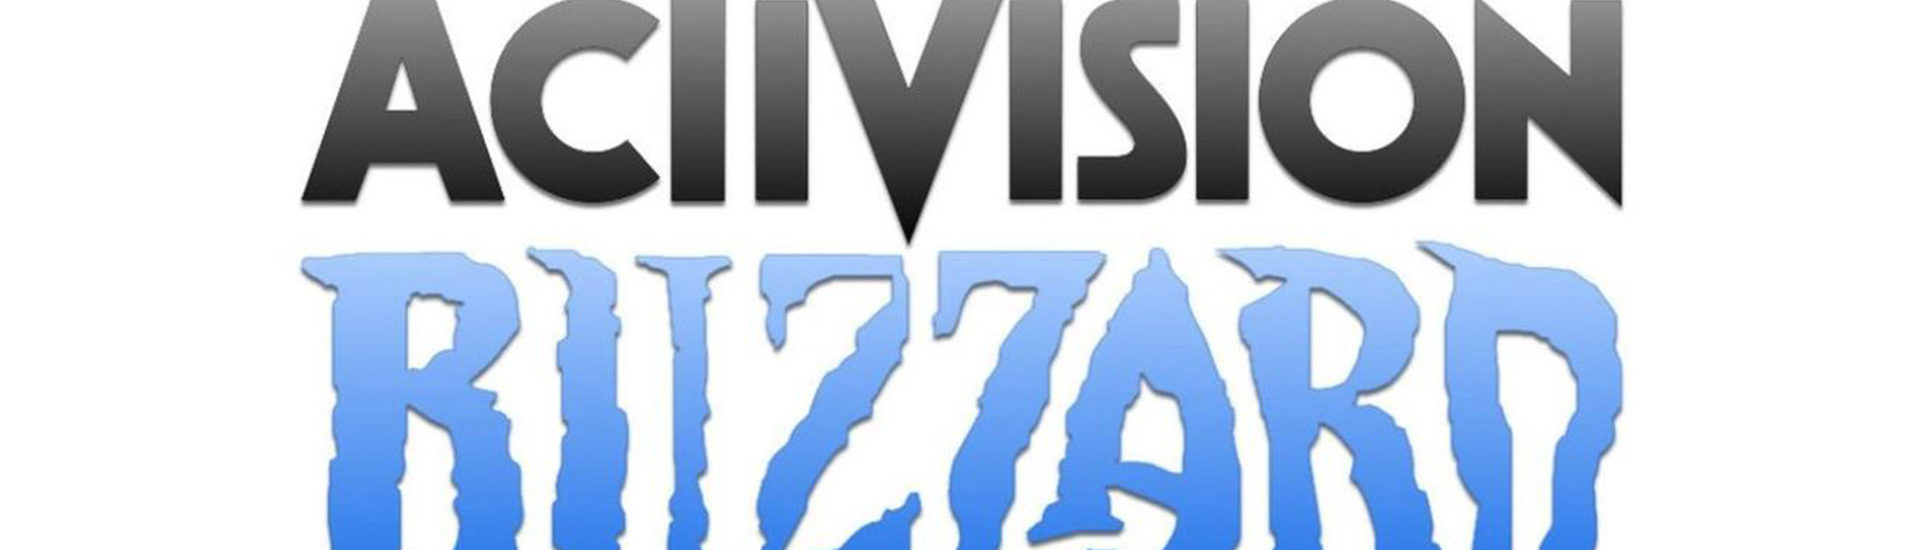 Klage gegen Activision Blizzard: Mitarbeiter unterschreiben offenen Brief